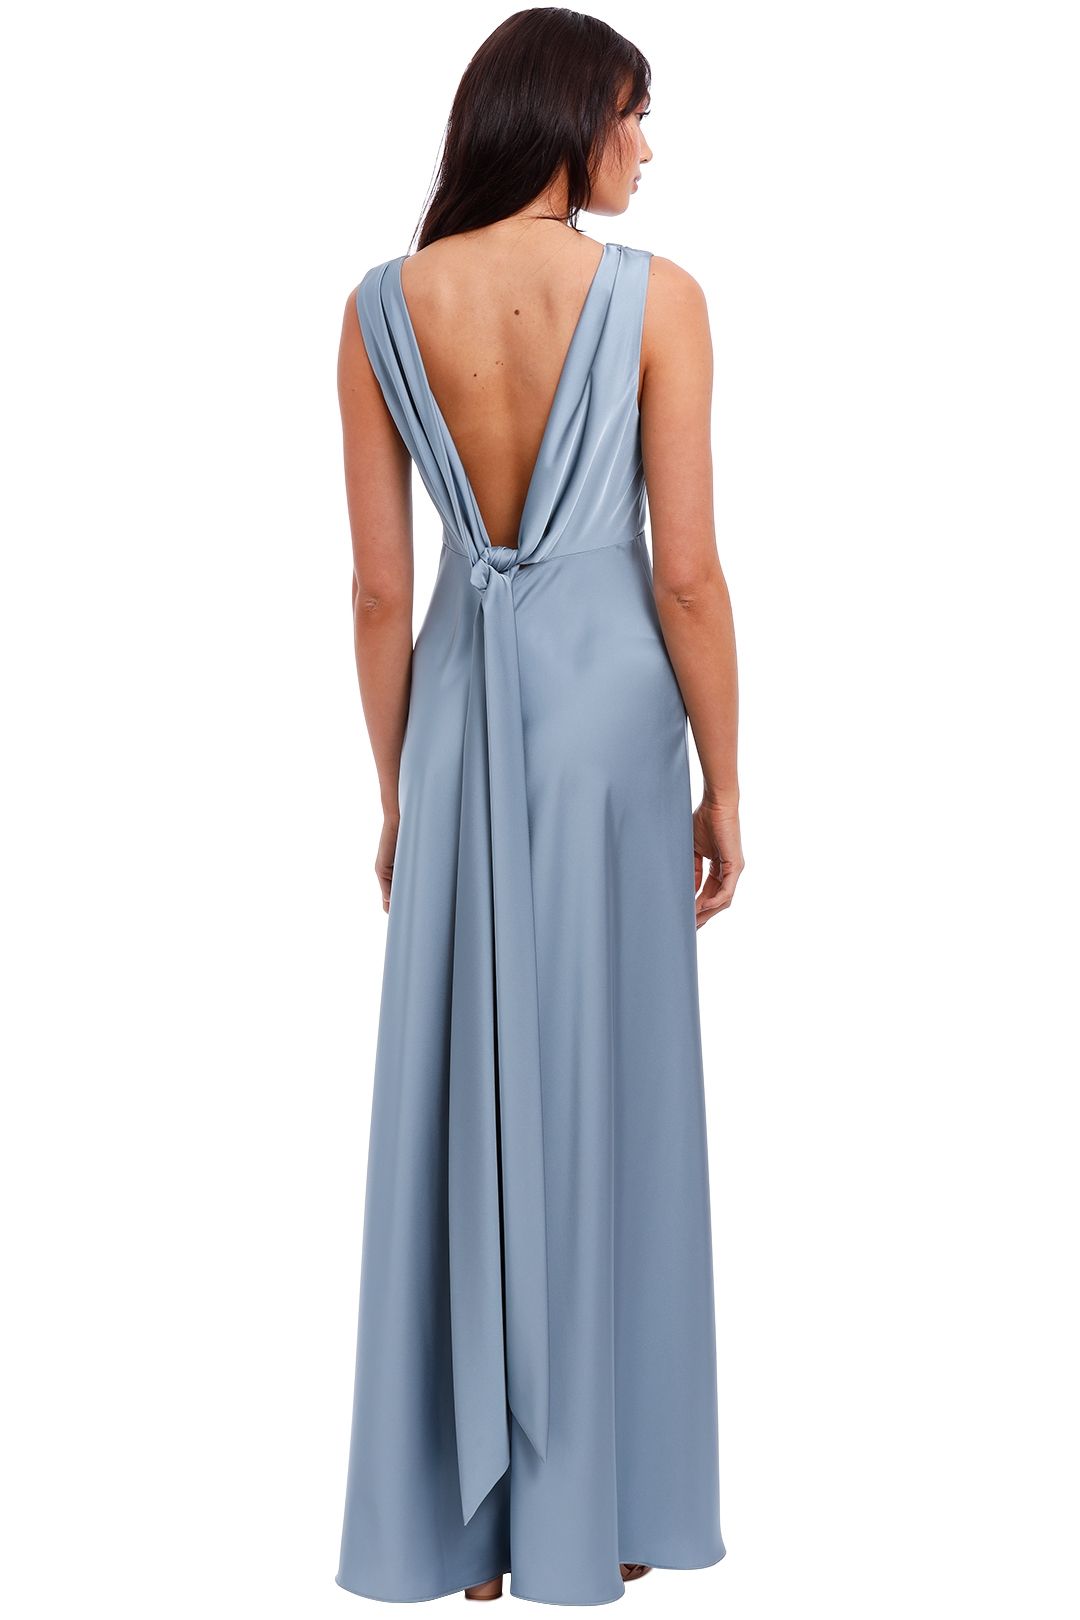 Jill Jill Stuart Cross Front Gown Blue Backless